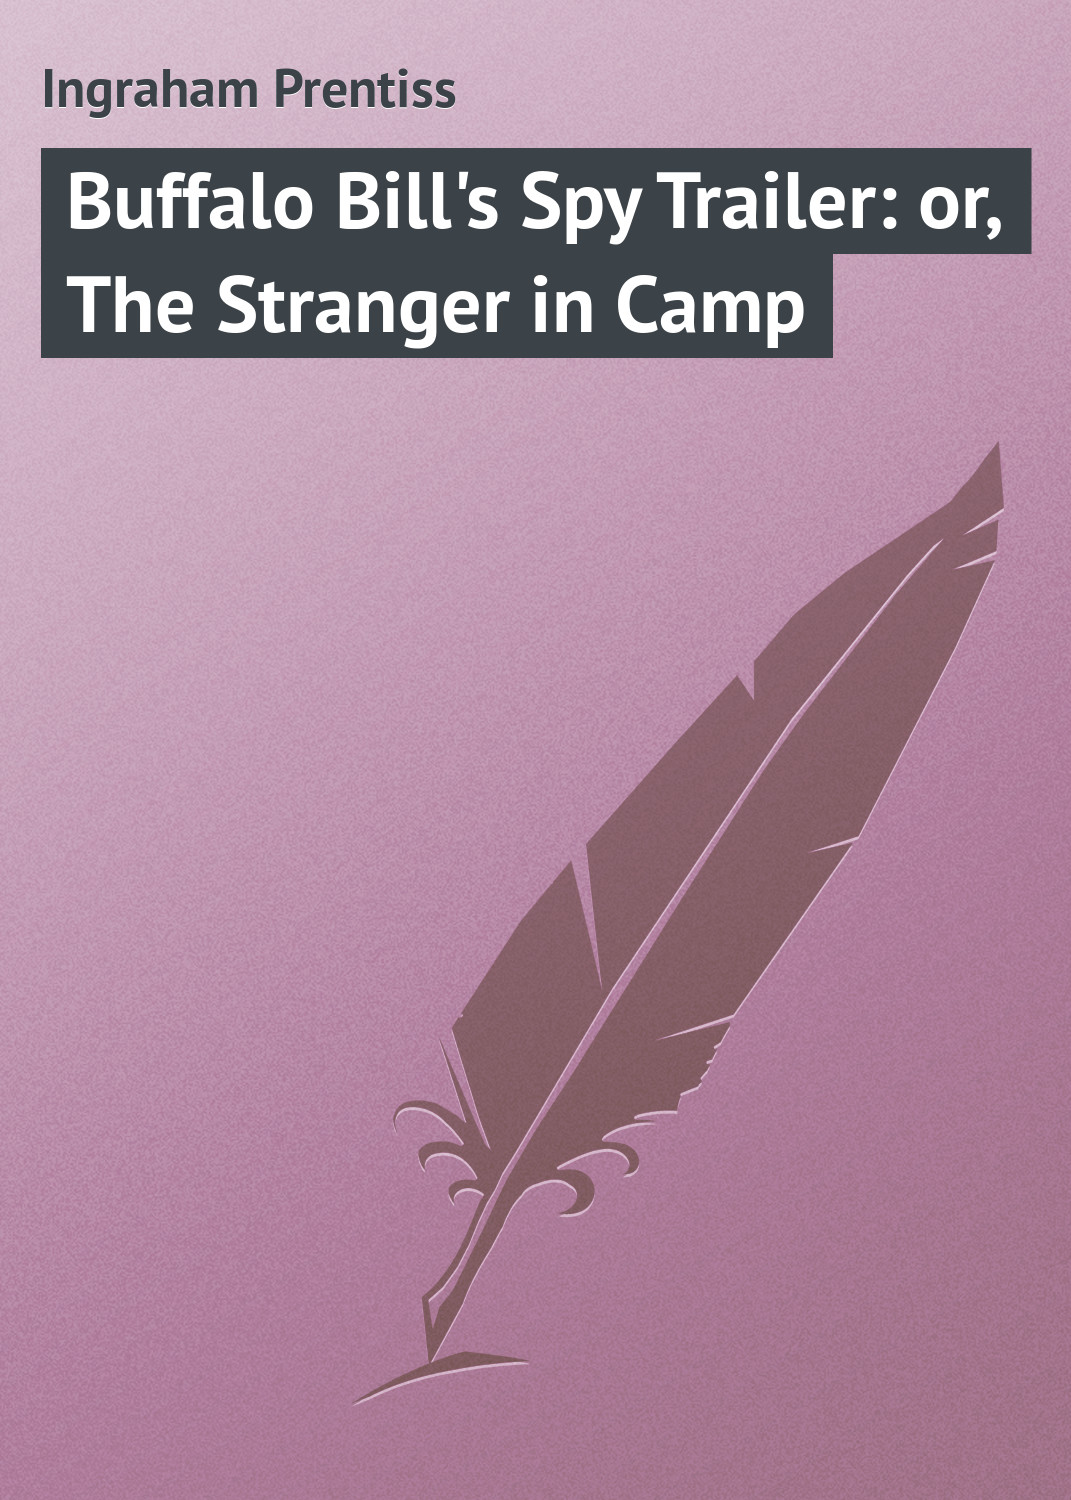 Книга Buffalo Bill's Spy Trailer: or, The Stranger in Camp из серии , созданная Prentiss Ingraham, может относится к жанру Зарубежная классика. Стоимость электронной книги Buffalo Bill's Spy Trailer: or, The Stranger in Camp с идентификатором 23148163 составляет 5.99 руб.